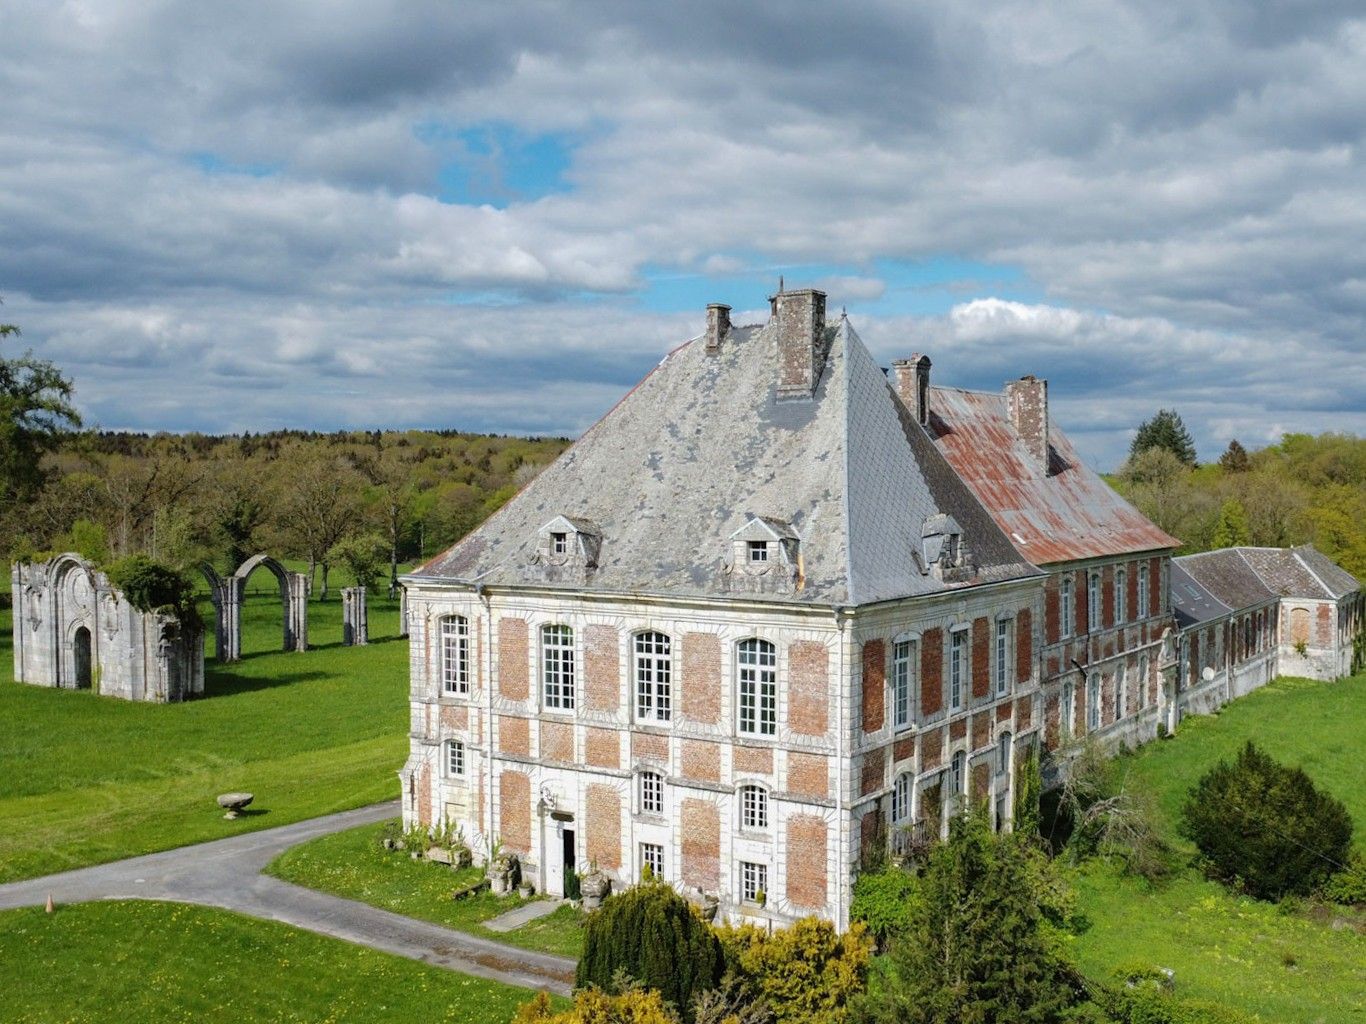 Fotos Ehemaliges Kloster am Fuße der Ardennen, Frankreich-Belgien